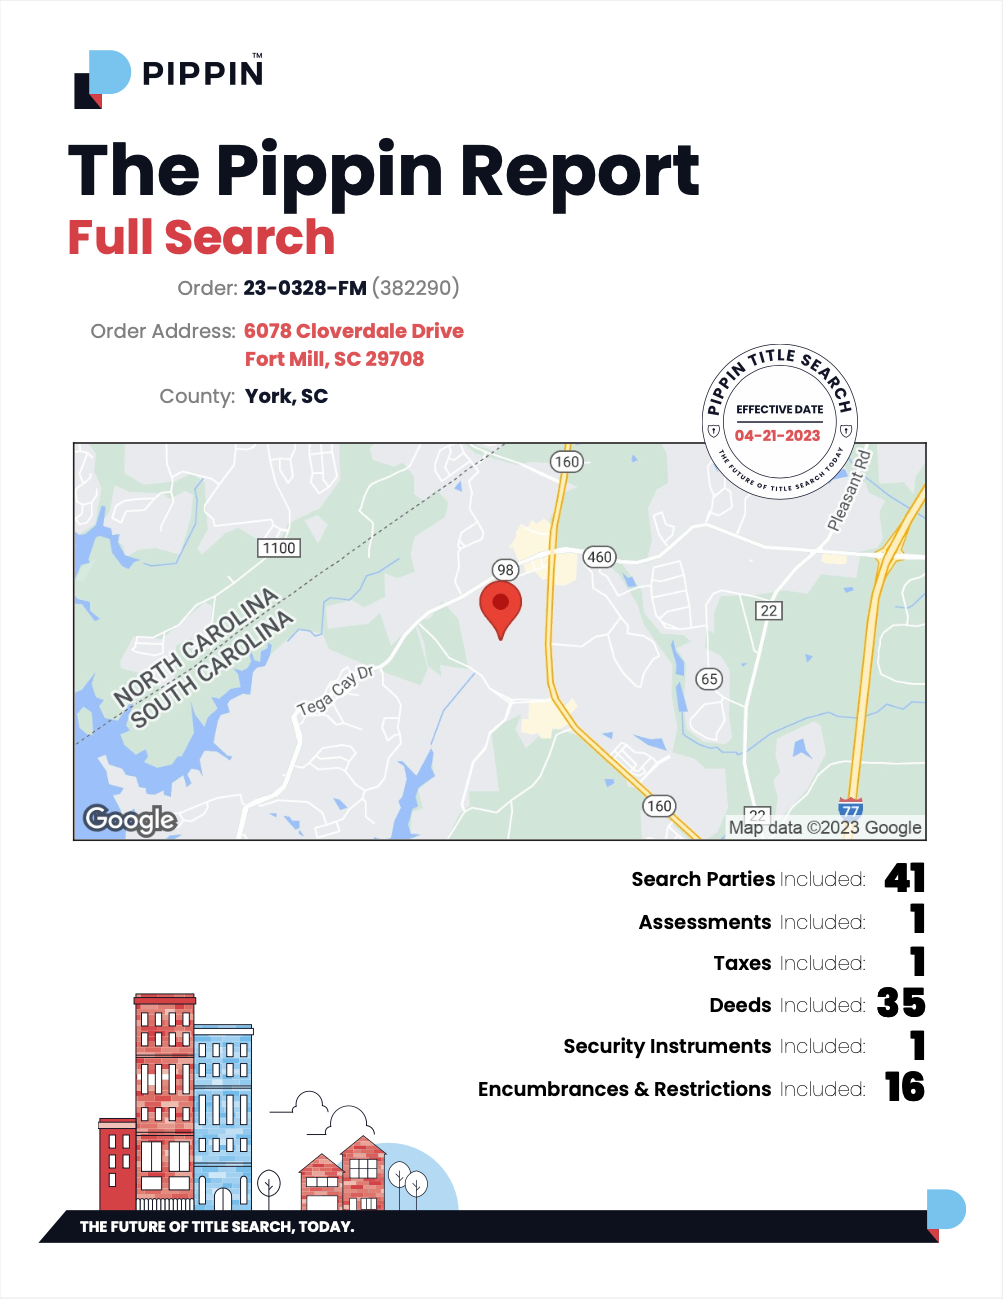 Pippin Demo Search Report